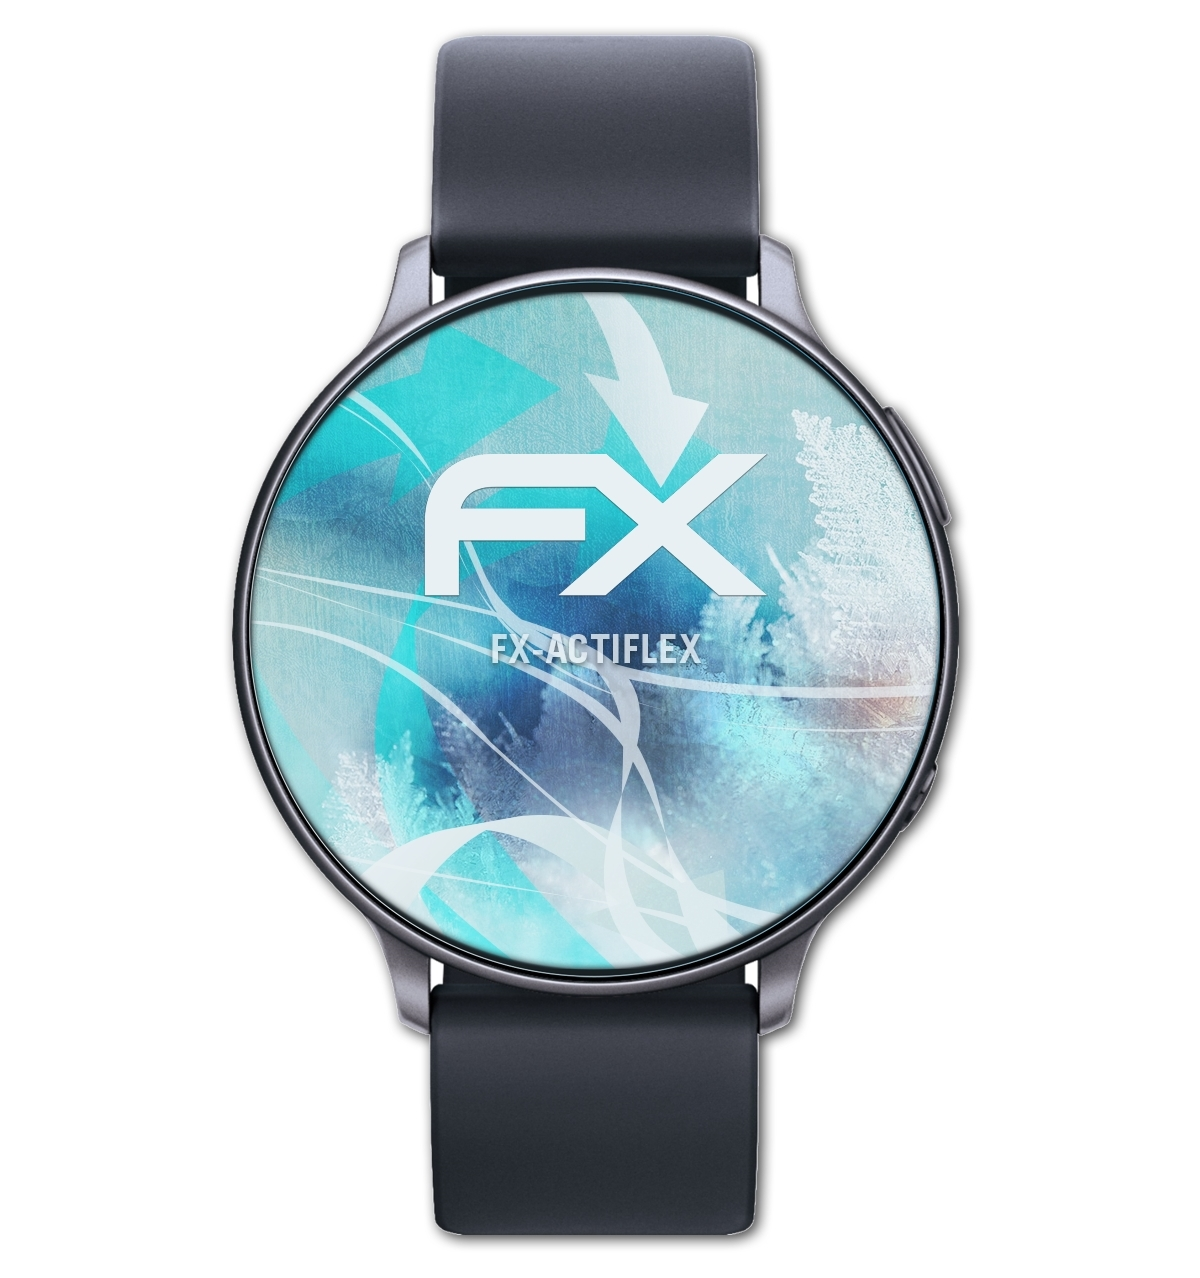 ATFOLIX 3x FX-ActiFleX Display Smartwatch Displayschutz(für (38mm))